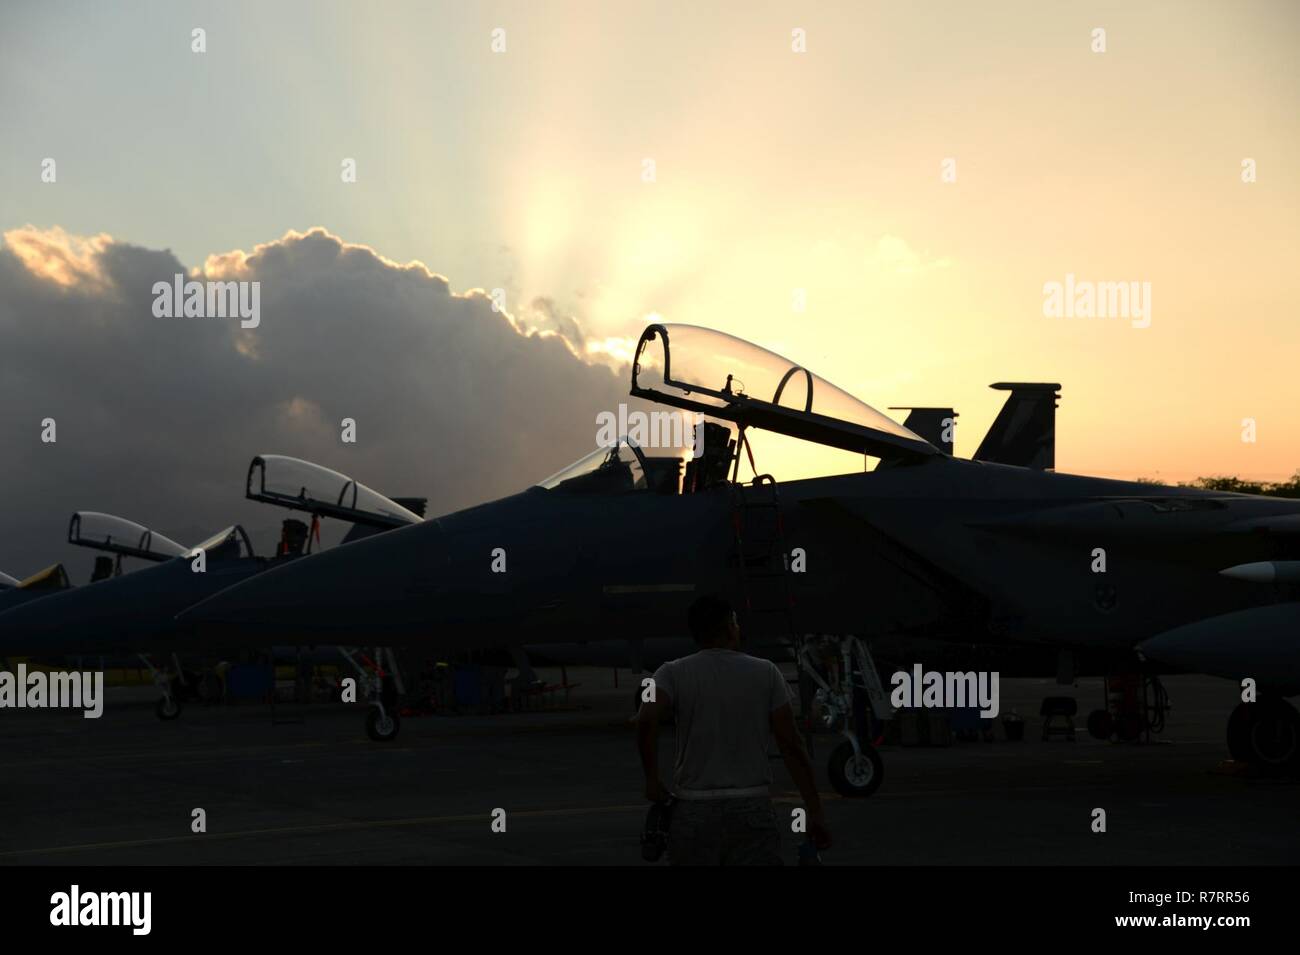 Eine Crew Chief mit Die 144 Aircraft Maintenance Squadron bereitet eine F-15C Eagle während Sentry Aloha 1703, 27. März 2017. Den mehrstufigen excercise realistische Luft-zu-Luft disimilar Fighter Training bietet. Die laufende Übung wird von der 154 Flügel, California Air National Guard. ( Stockfoto